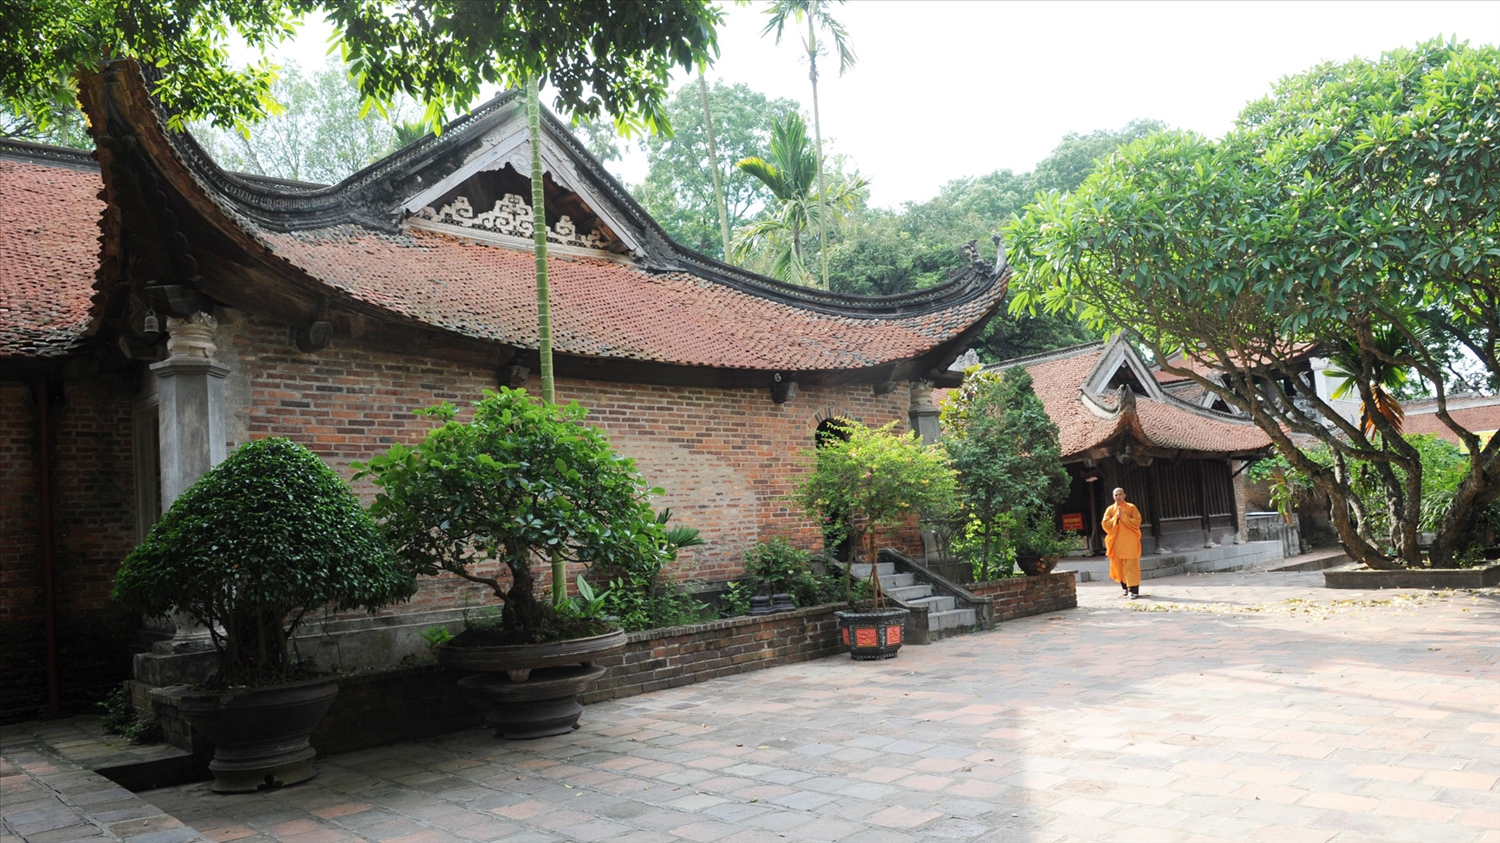 Chùa Vĩnh Nghiêm được coi là chốn tổ của Thiền phái Trúc Lâm, Trường Đại học Phật giáo đầu tiên ở Việt Nam. mở cửa tự do đón khách thập phương.